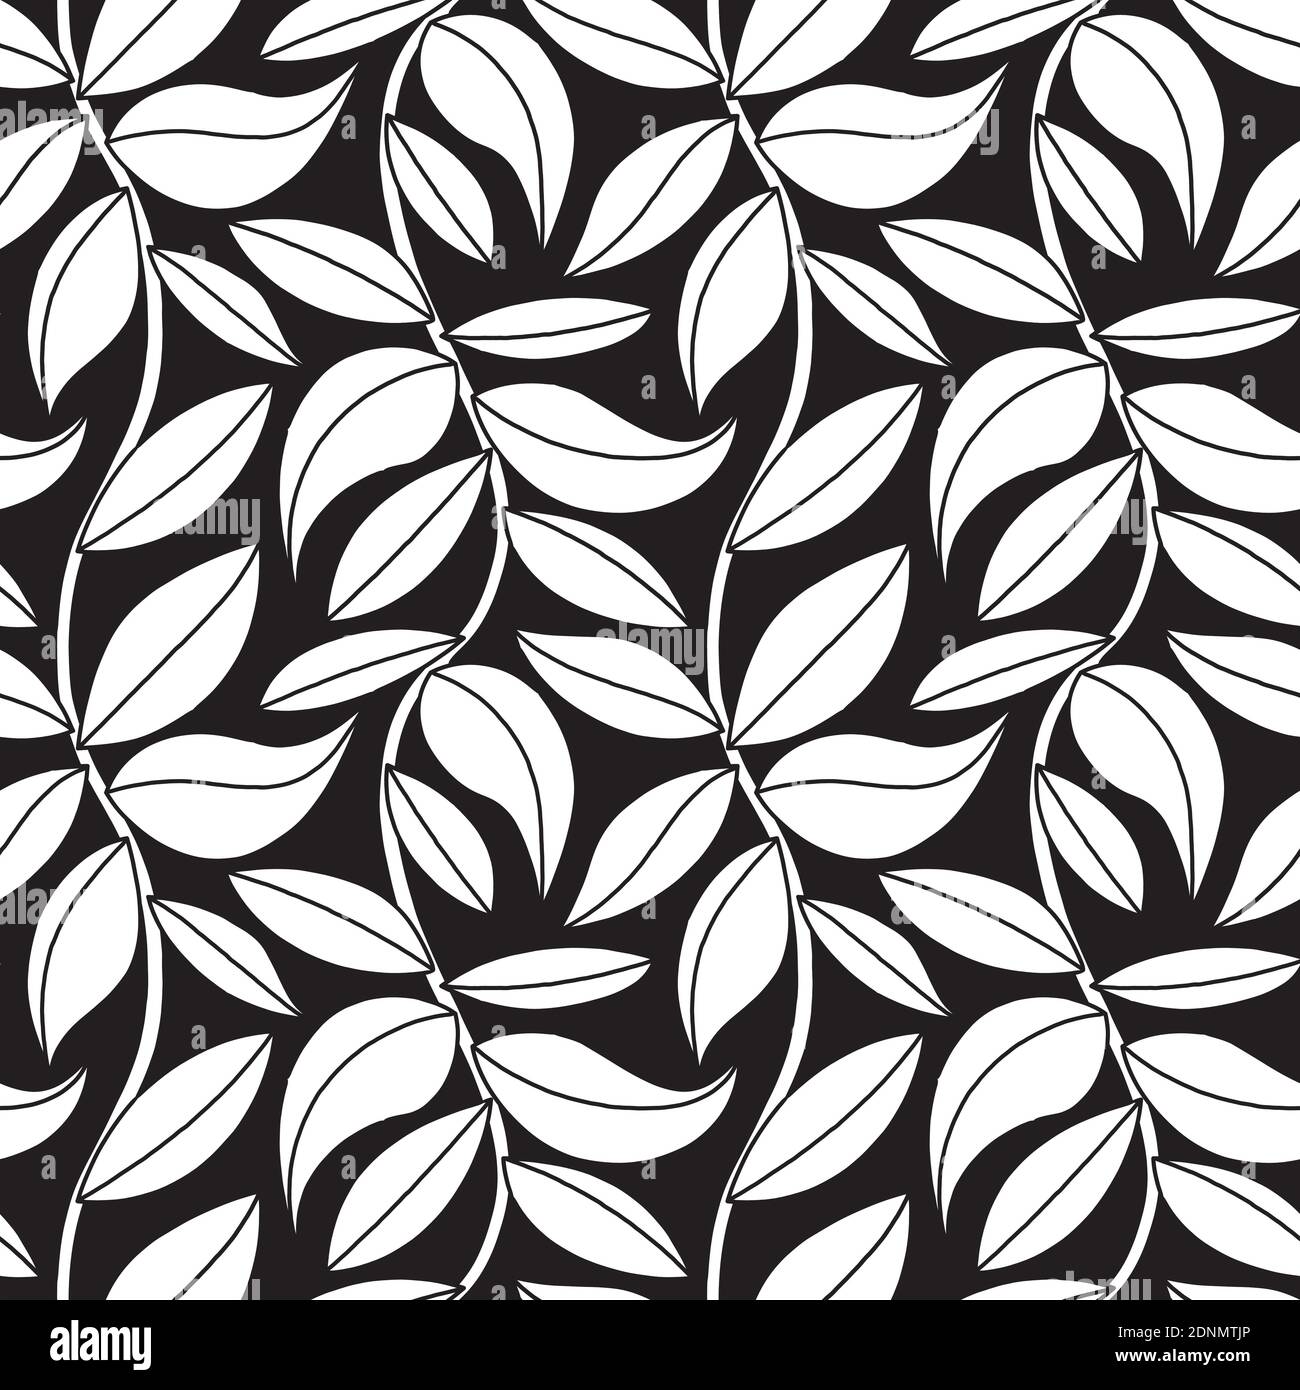 Nahtloses Vektor-Muster mit einfachen Blättern auf Ästen in schwarz-weiß Natur Tapete Hintergrund. Stock Vektor